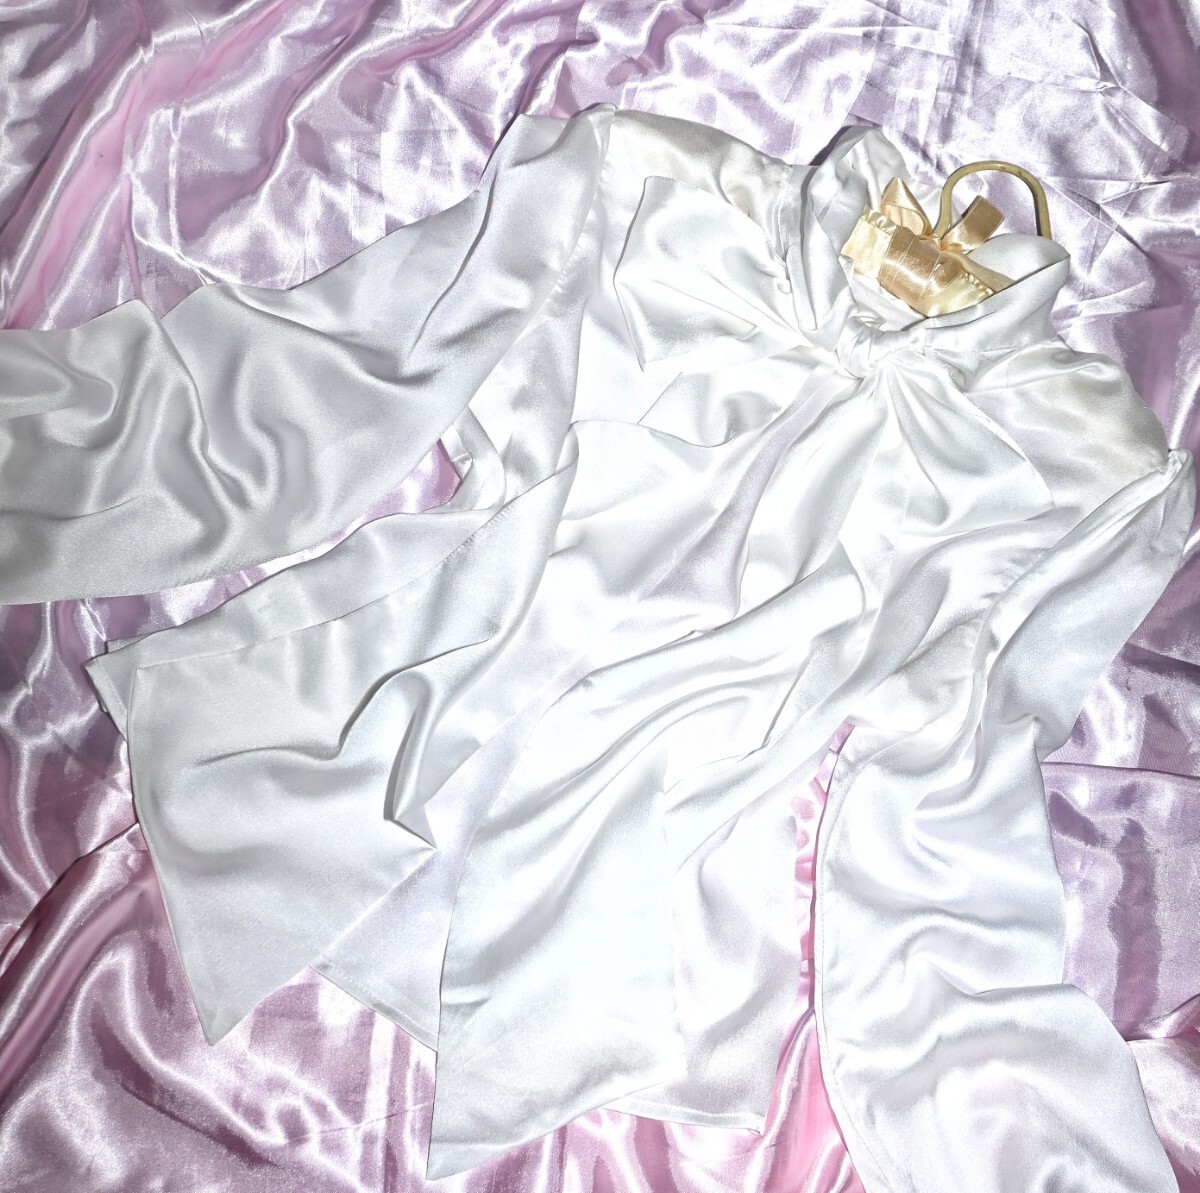 ☆超光沢 純白ホワイト 光沢サテンブラウス 大きめバックリボン スカーフ柄 つるつるすべすべ ロングプリーツスカート☆の画像5